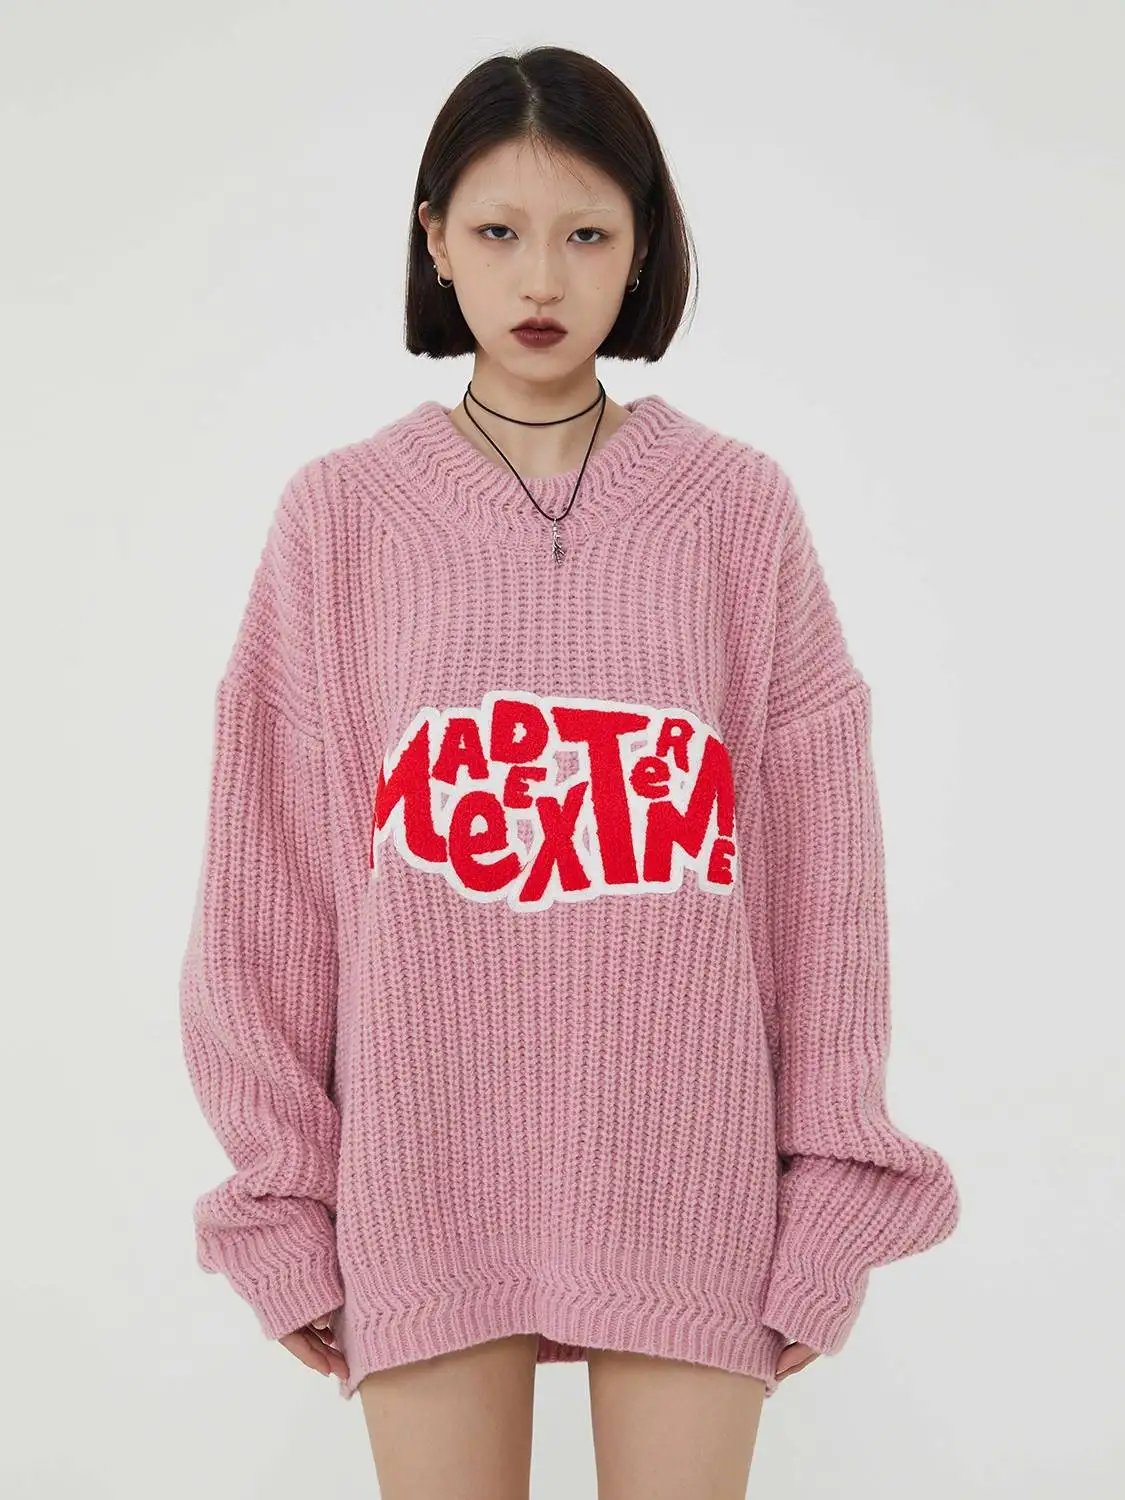 

Sweater Woman Winter 2023 Harajuku Vintage Letter Knitwearssweater Oversized Casual Pullover Women Jumper Sweater Z201